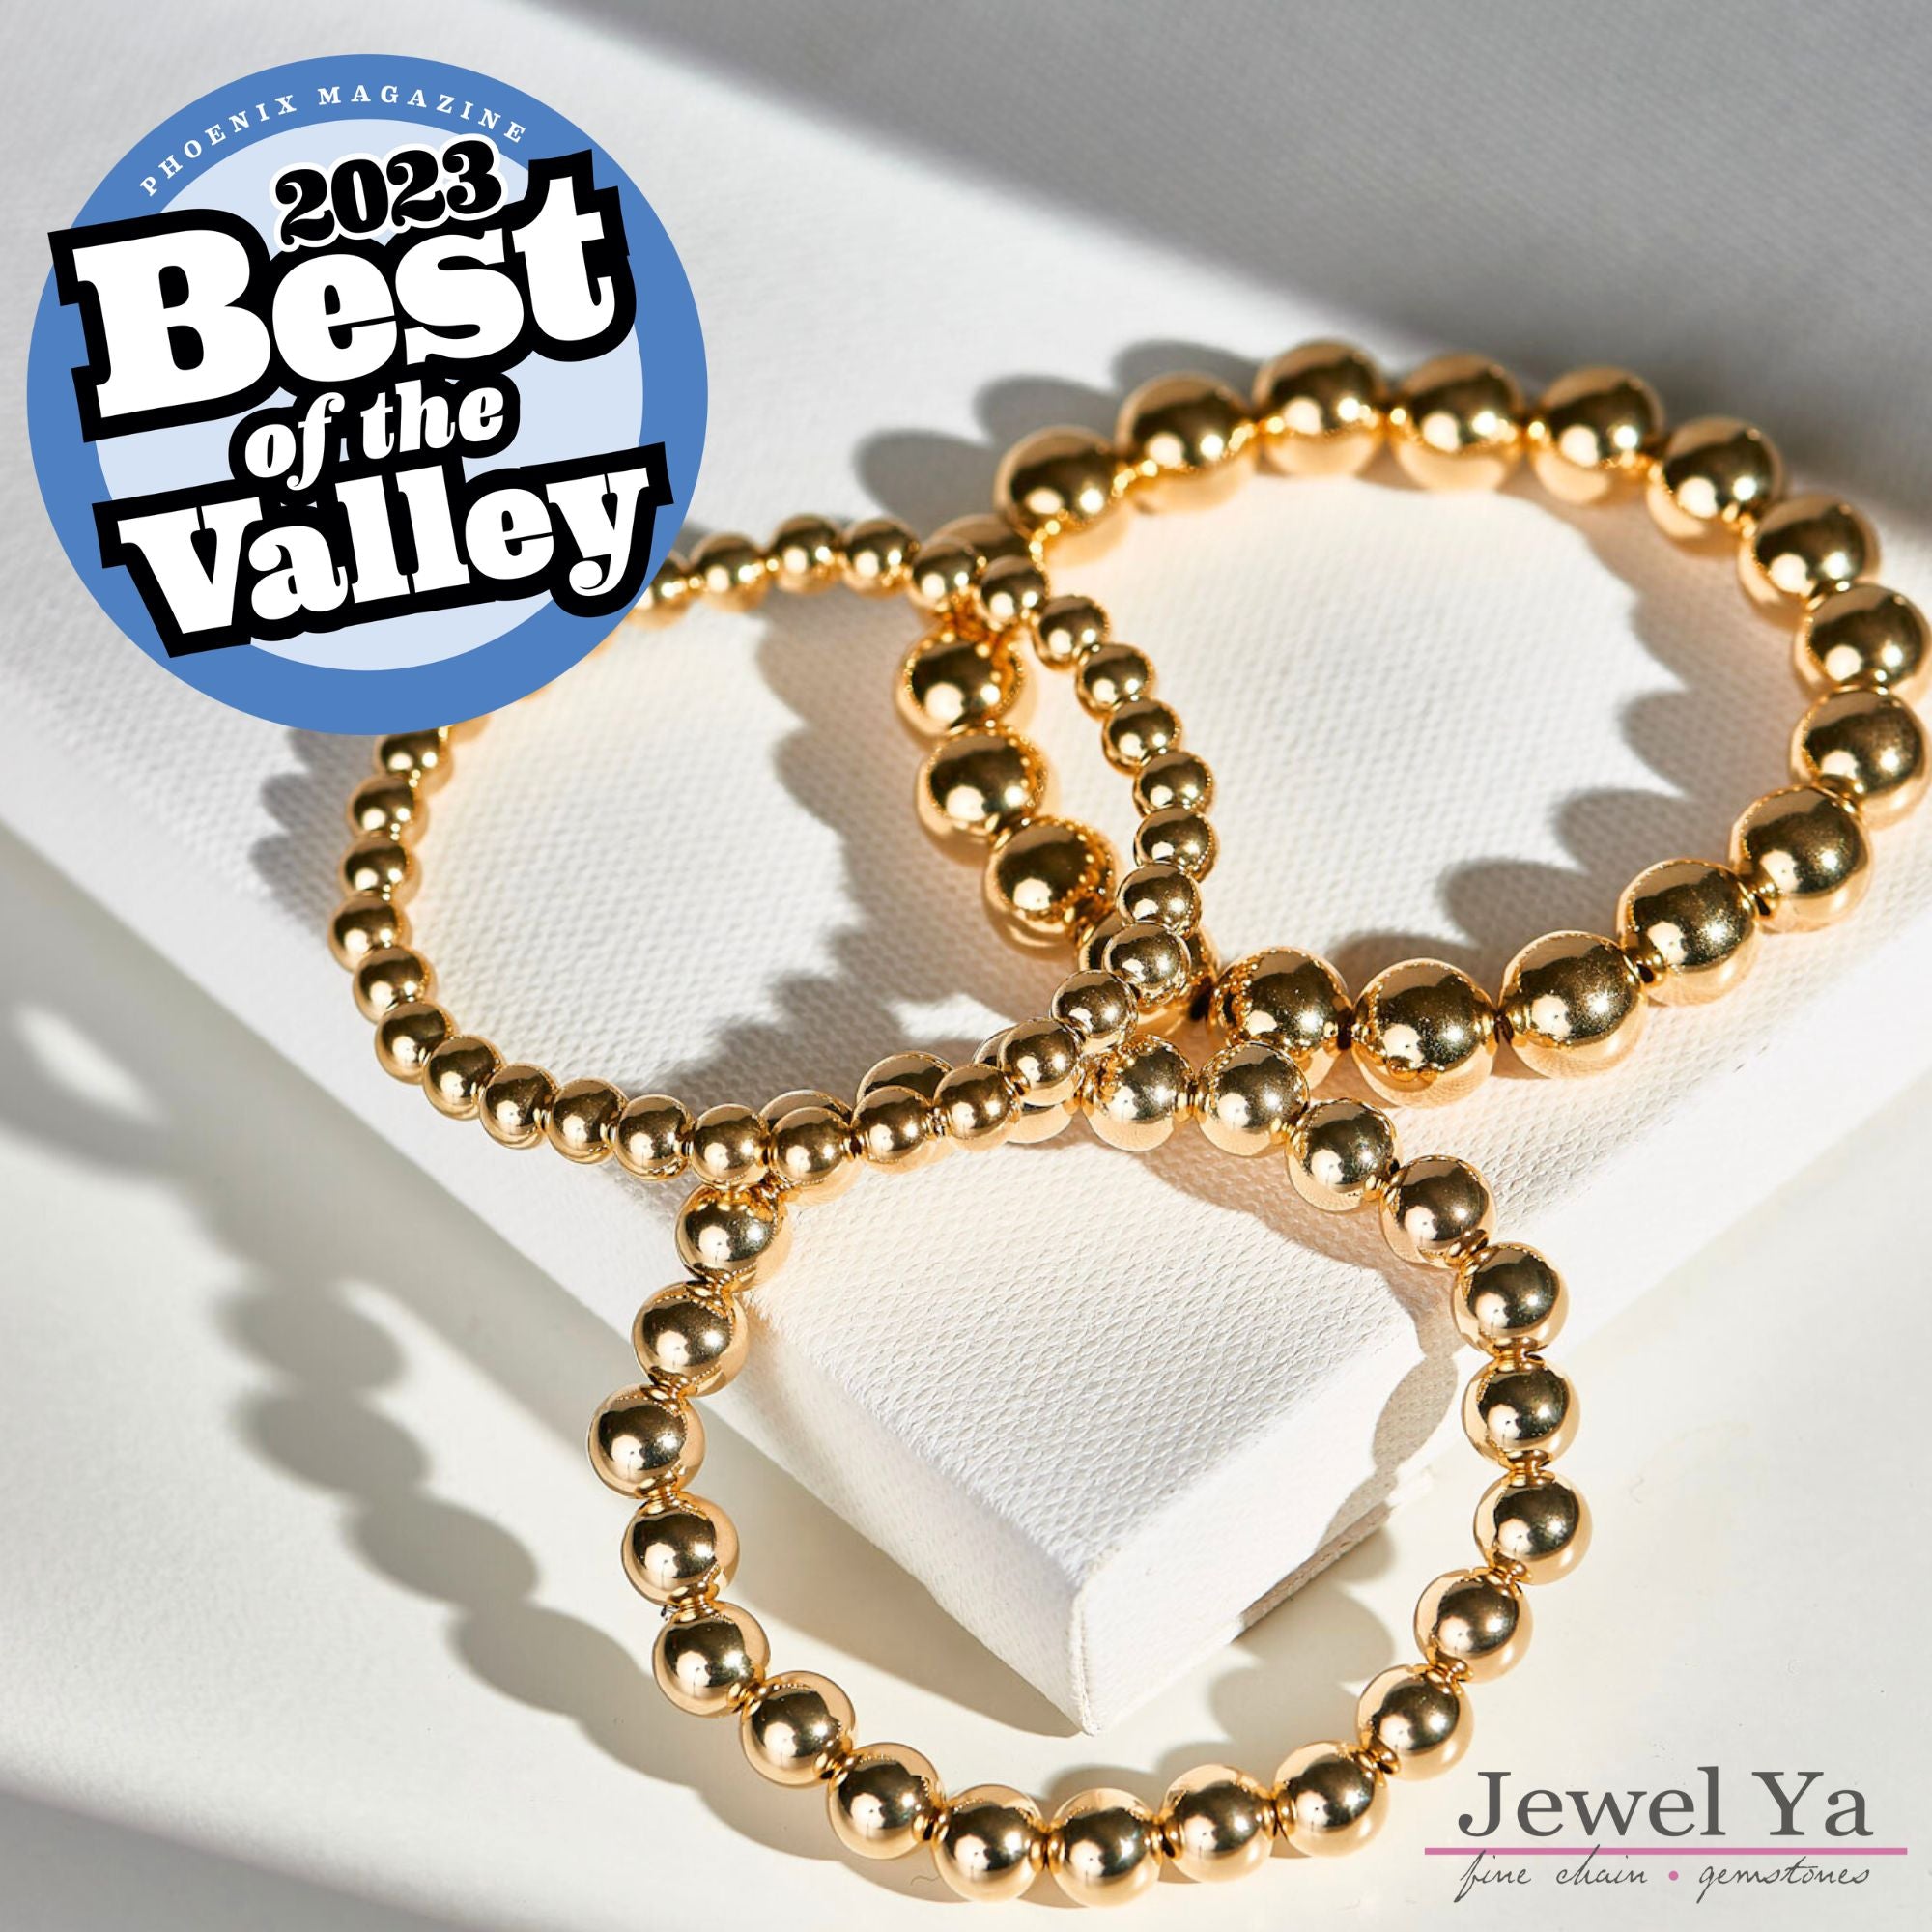 6mm Sterling Silver & 14k Gold Filled Bracelet Set - Jewel Ya